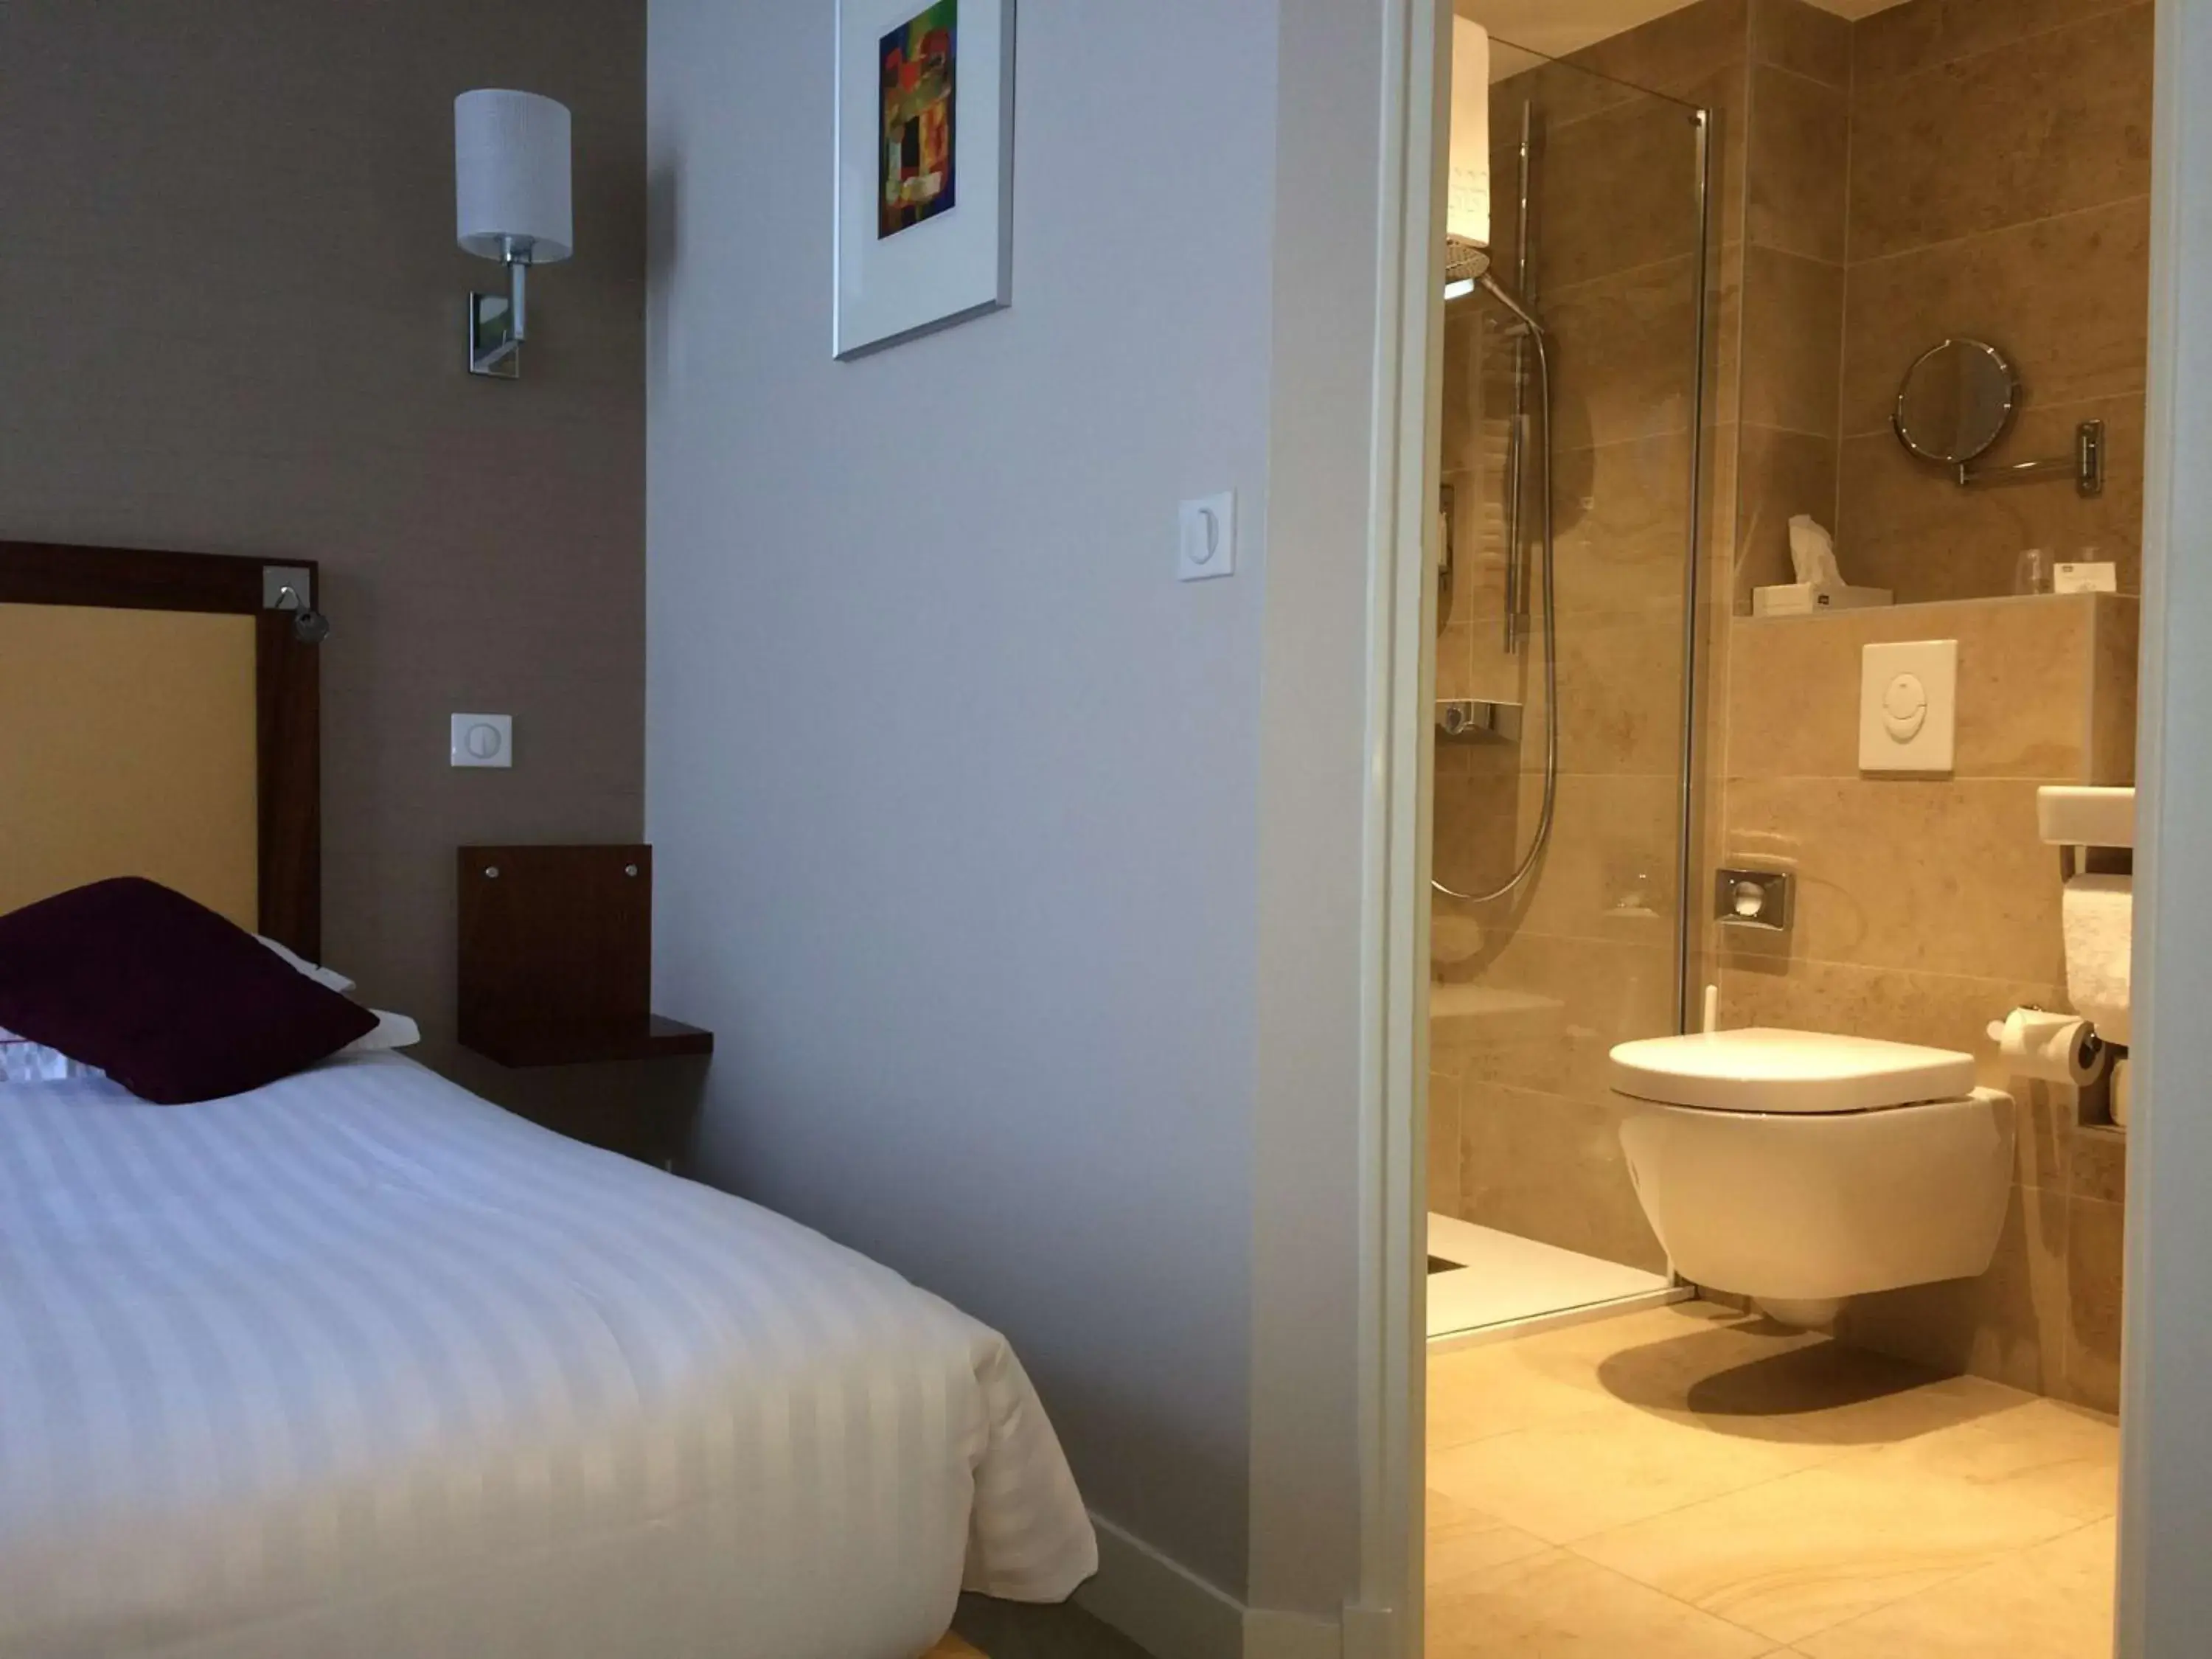 Bedroom, Bathroom in Best Western Plus Hotel D'Angleterre